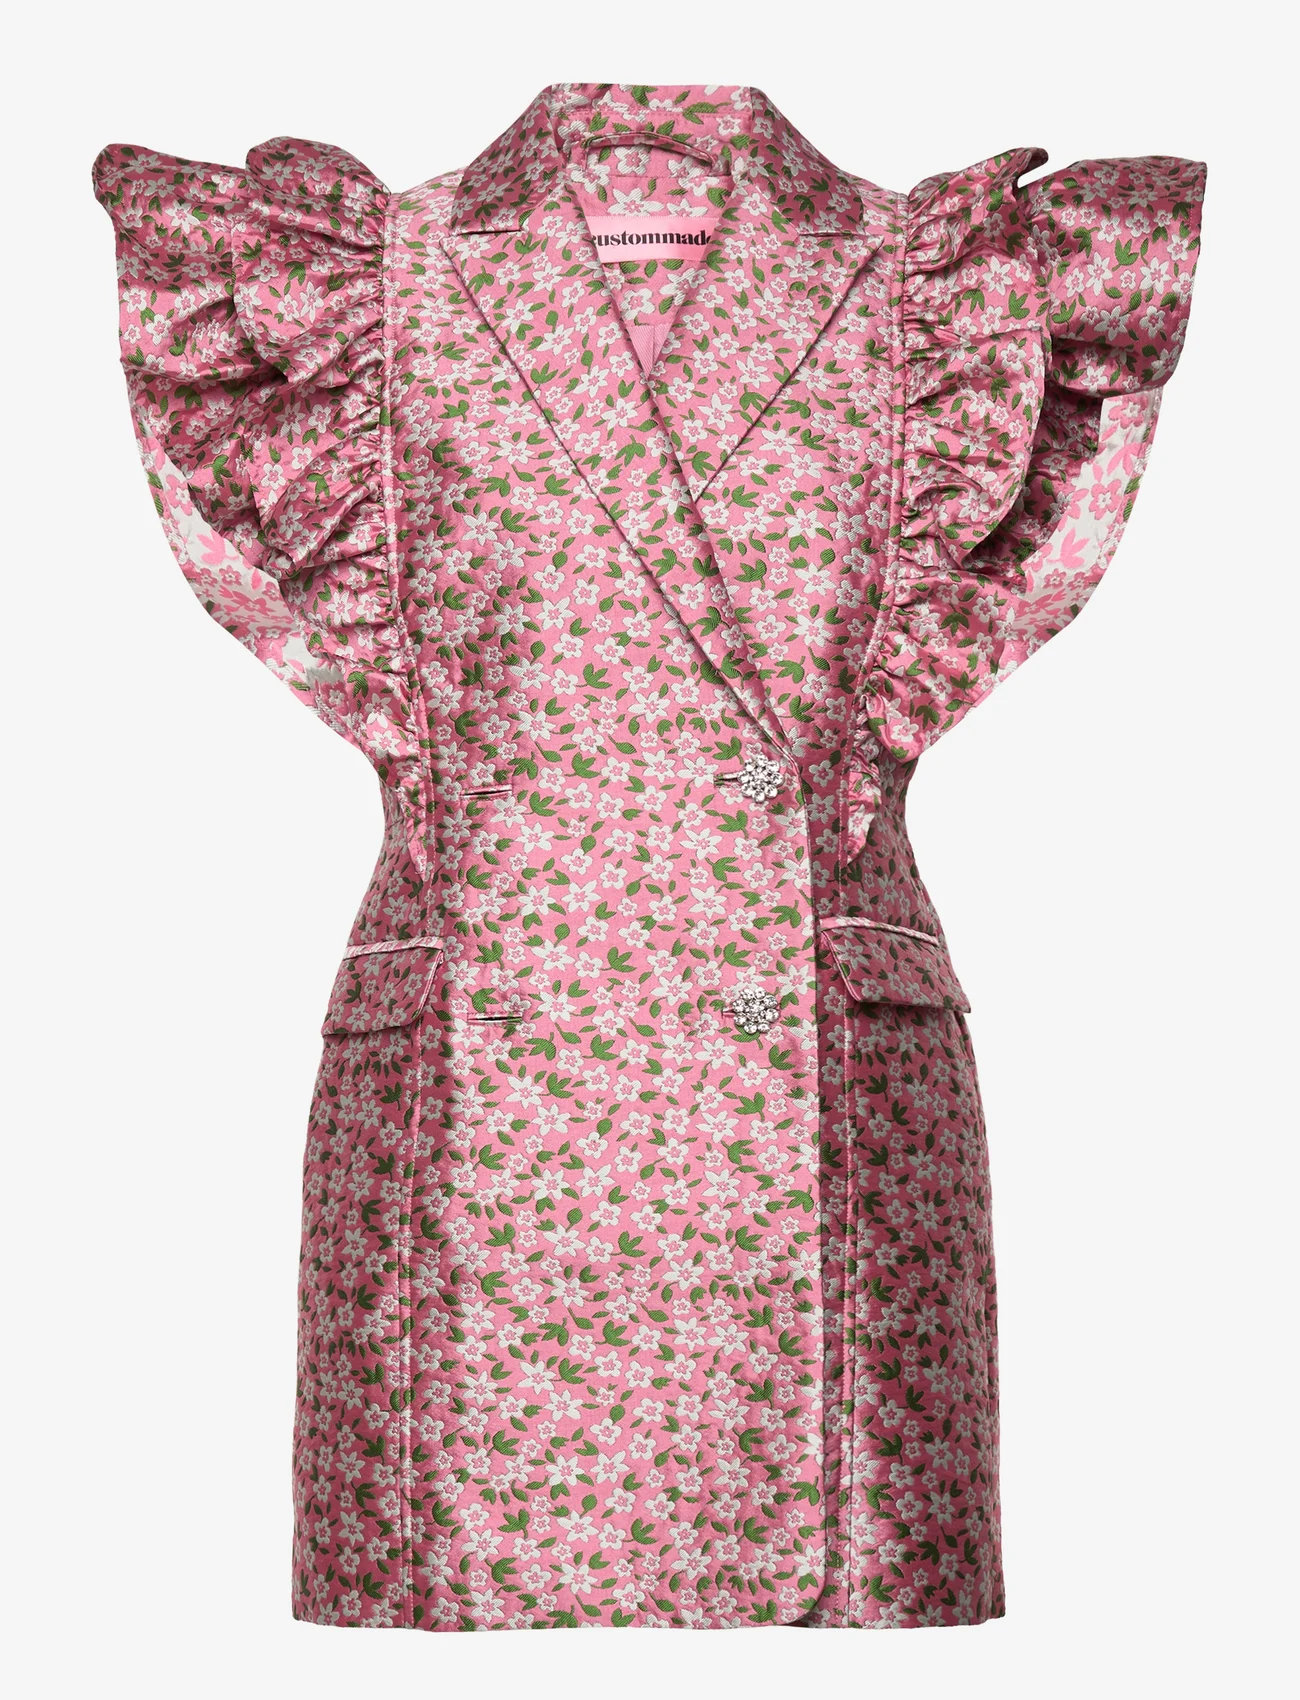 Custommade - Kobane Jacquard - odzież imprezowa w cenach outletowych - 157 sea pink - 0